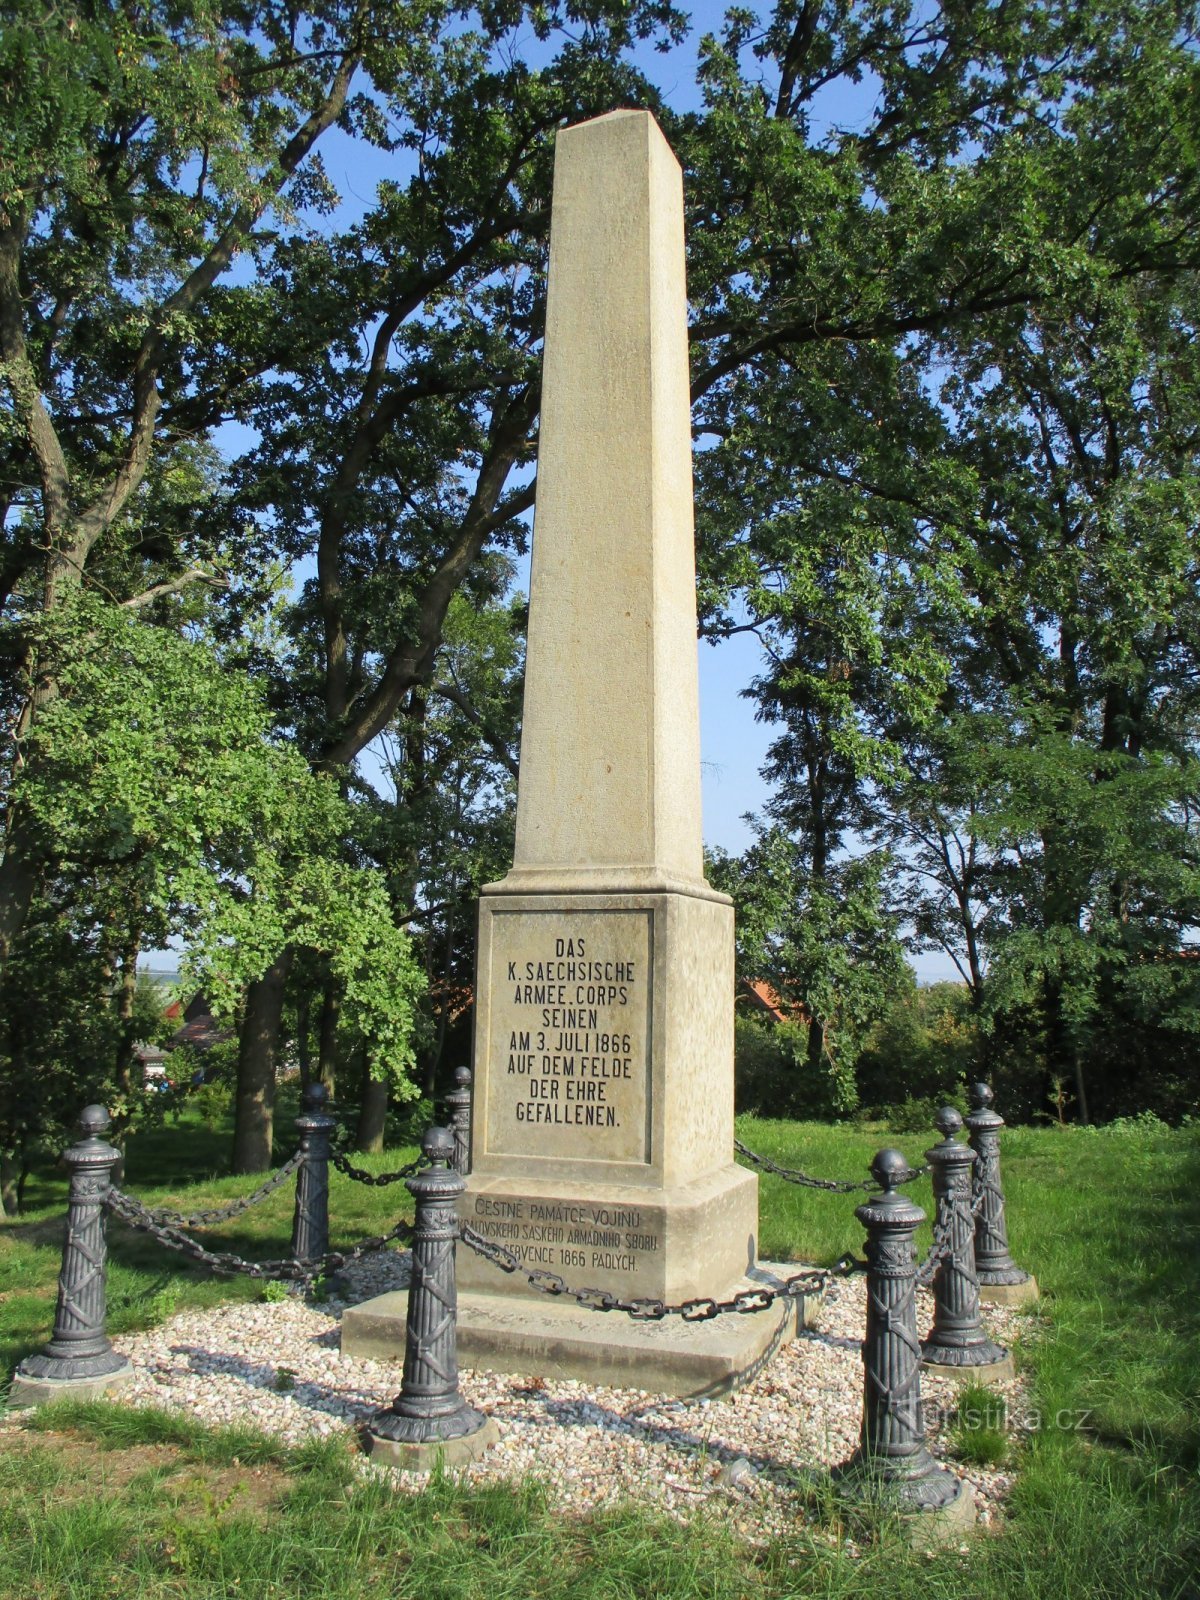 Monument du chœur saxon (Probluz)